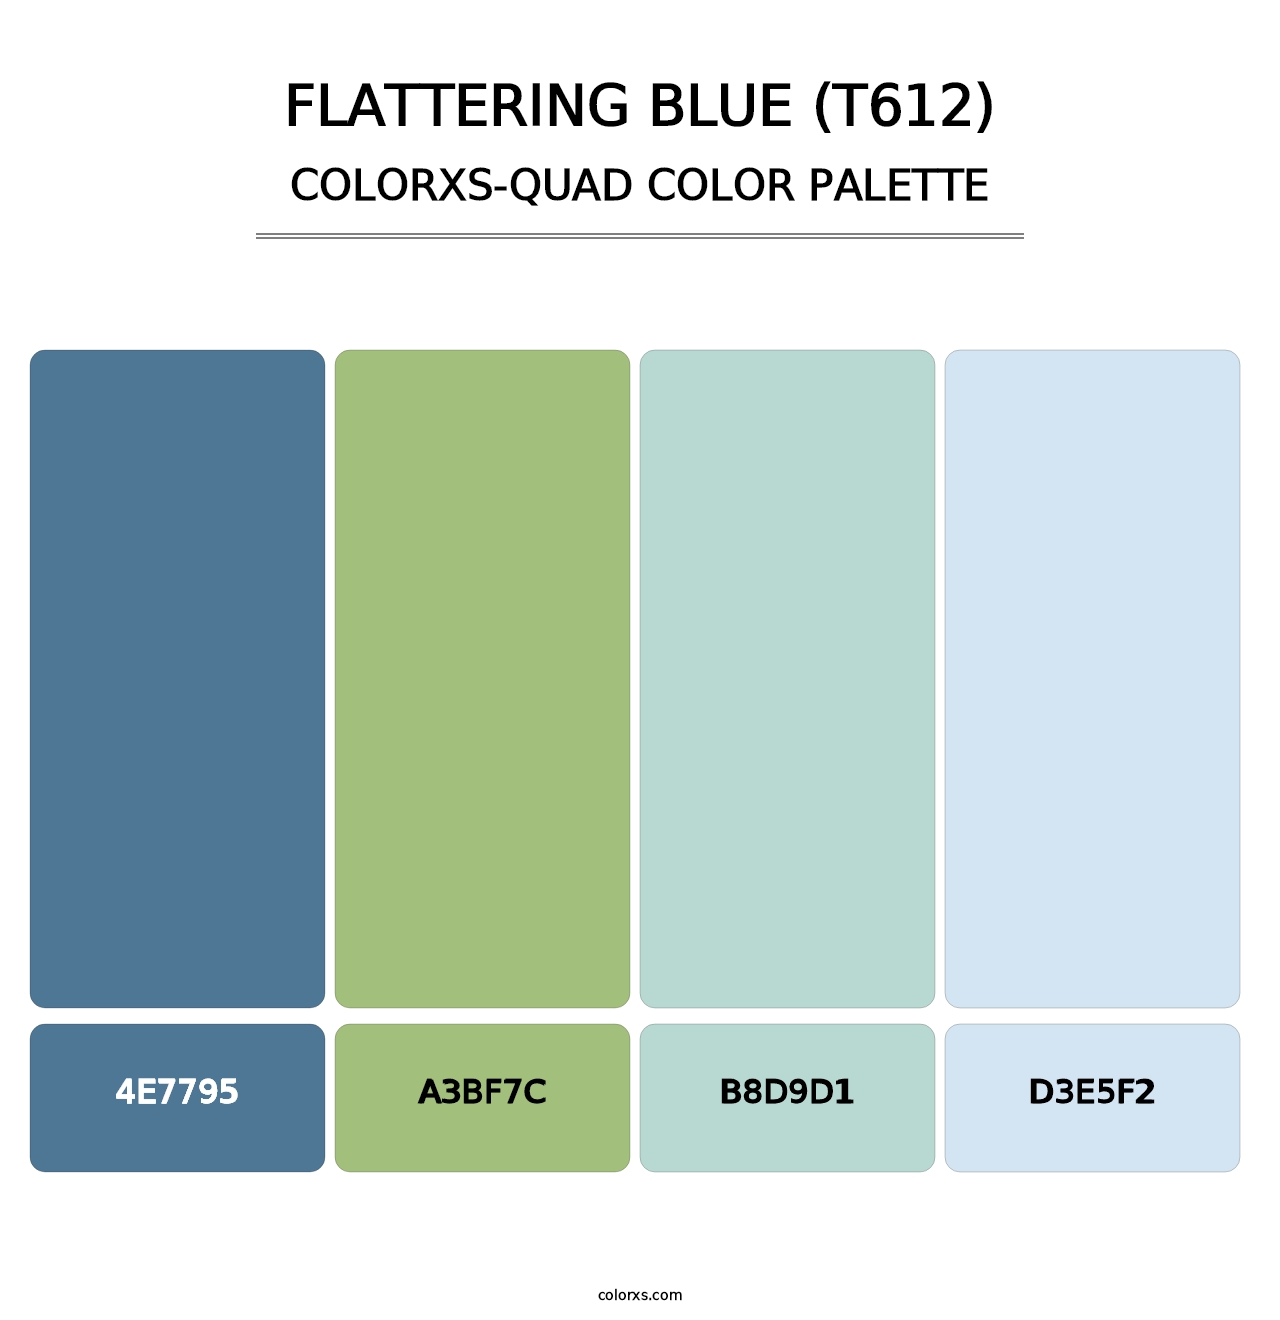 Flattering Blue (T612) - Colorxs Quad Palette